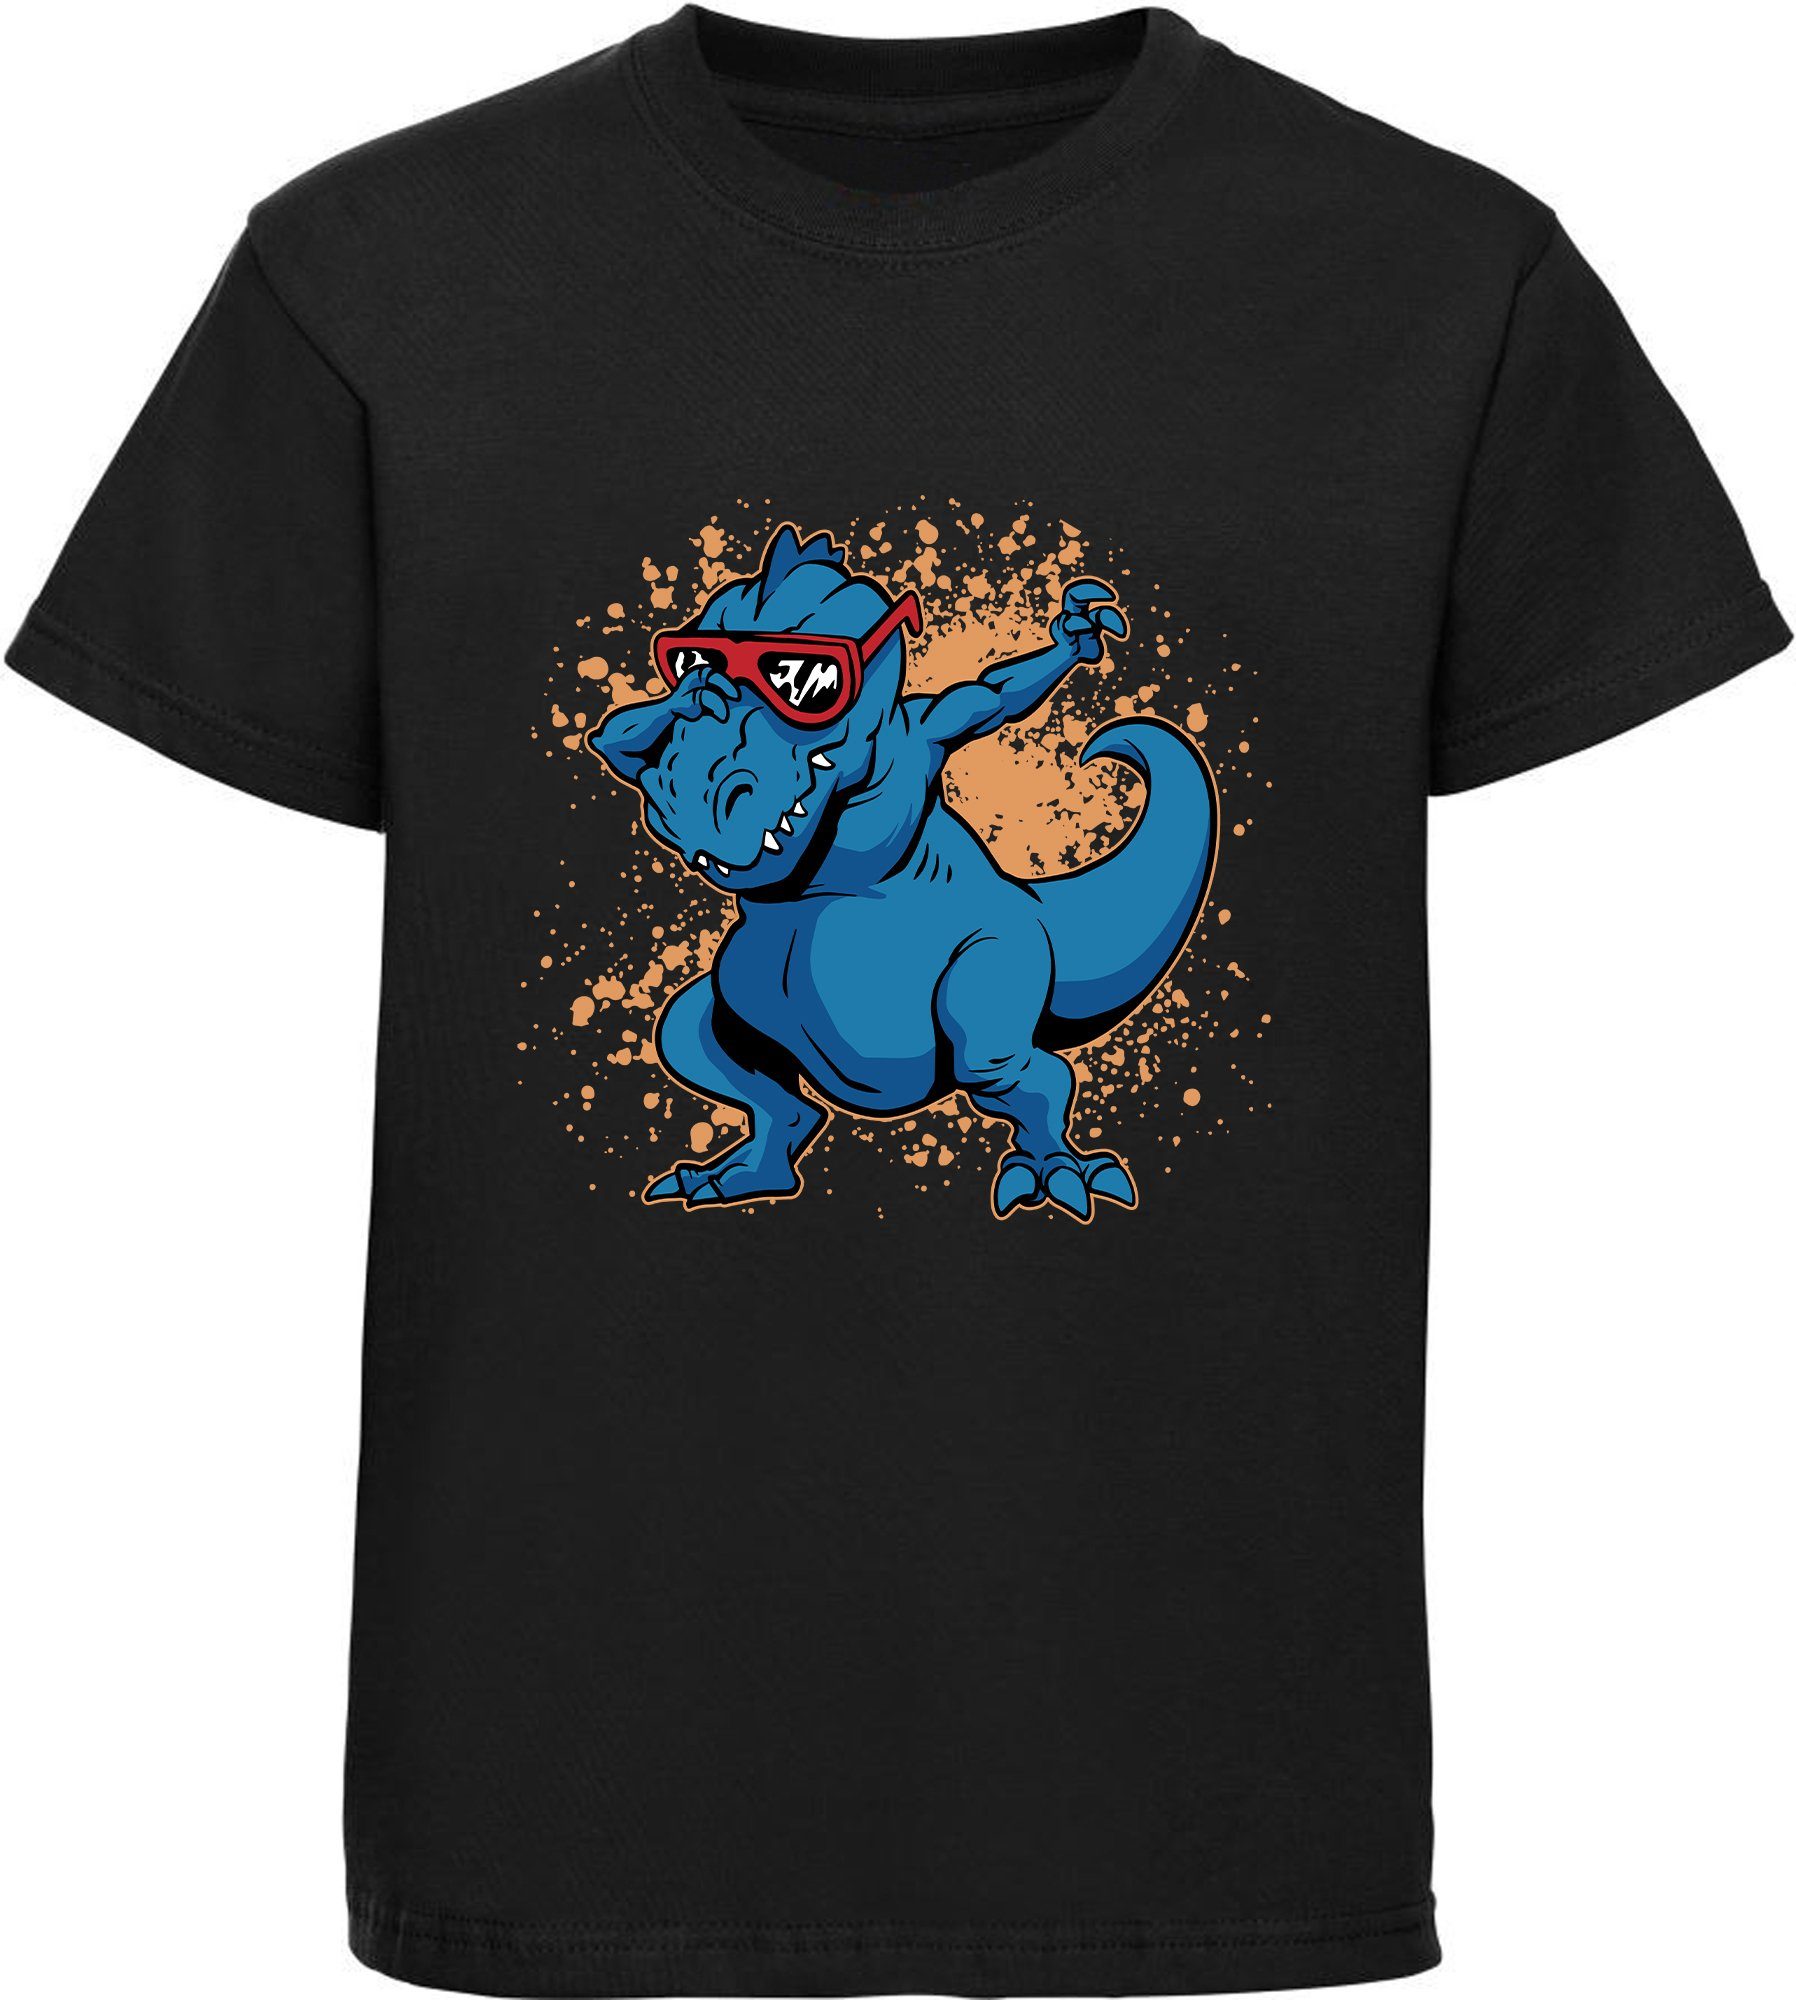 MyDesign24 T-Shirt bedrucktes Kinder T-Shirt T-Rex mit Brille am tanzen 100% Baumwolle mit Dino Aufdruck, schwarz i49